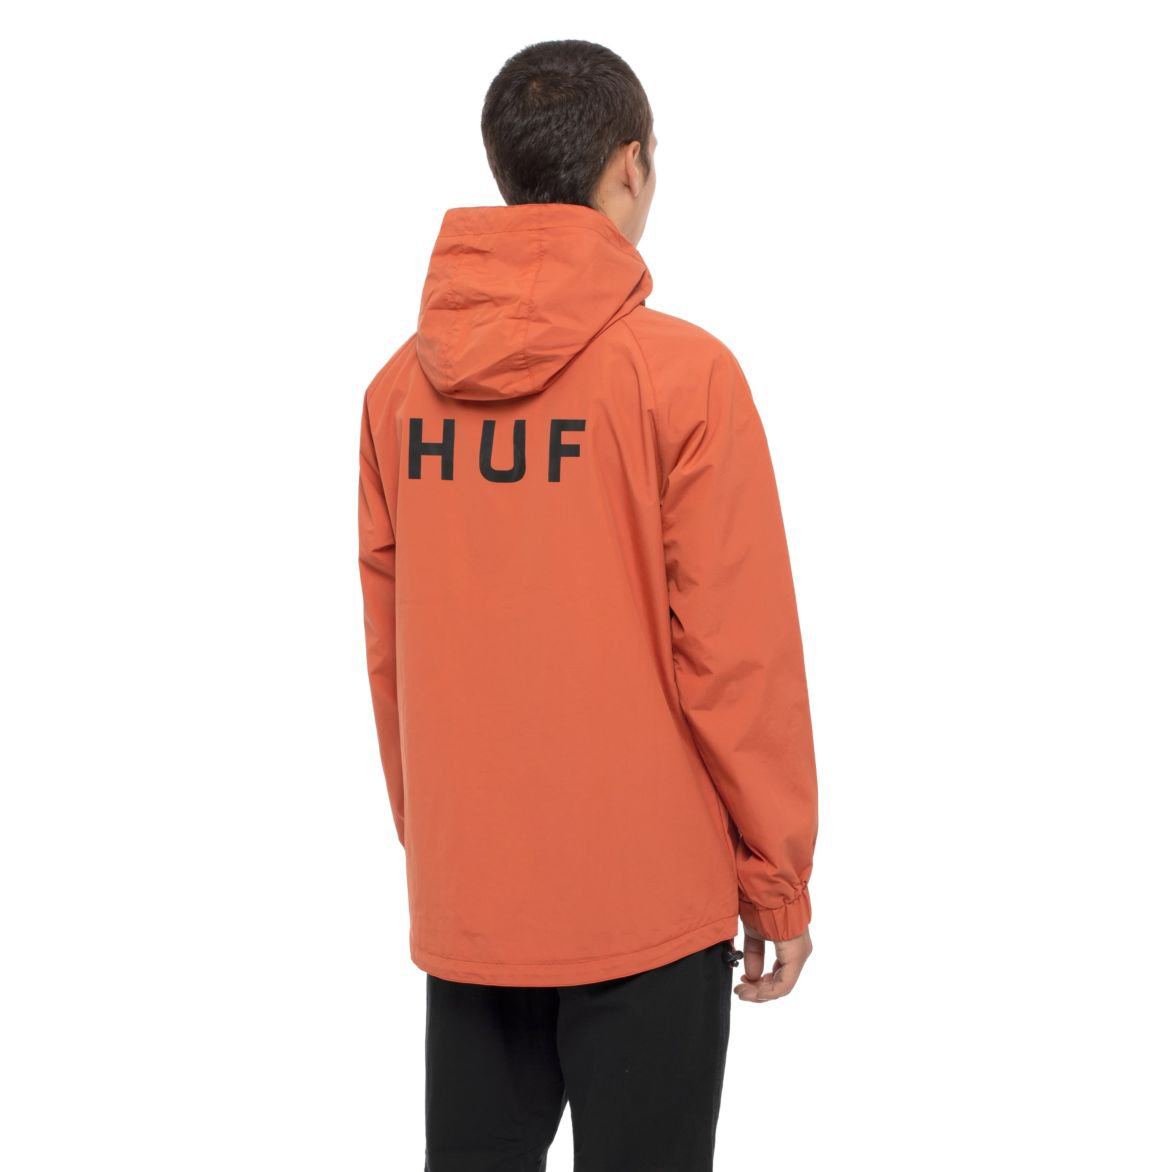 OUTERWEAR - Huf Standard Shell 2 Jacket Rust Men JK00157-RST